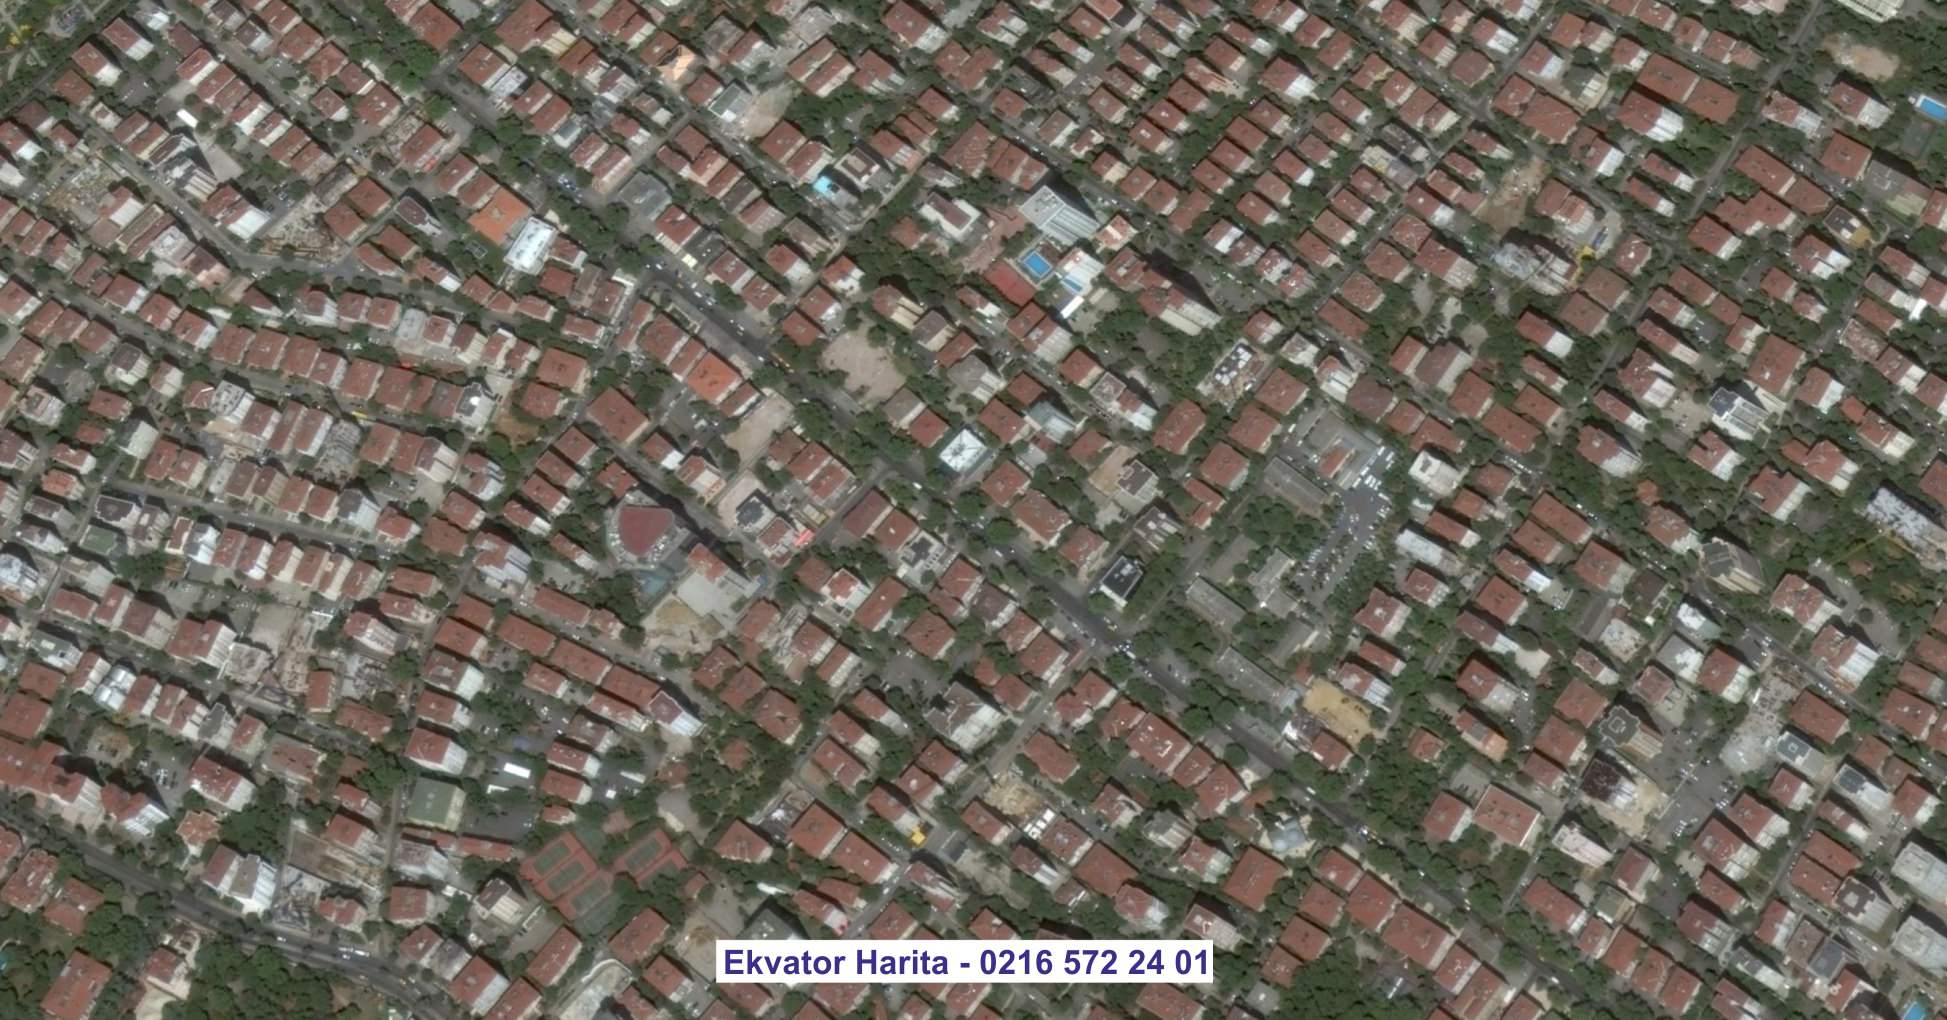 Zeytinburnu Uydu Görüntüsü Örnek Fotoğrafı